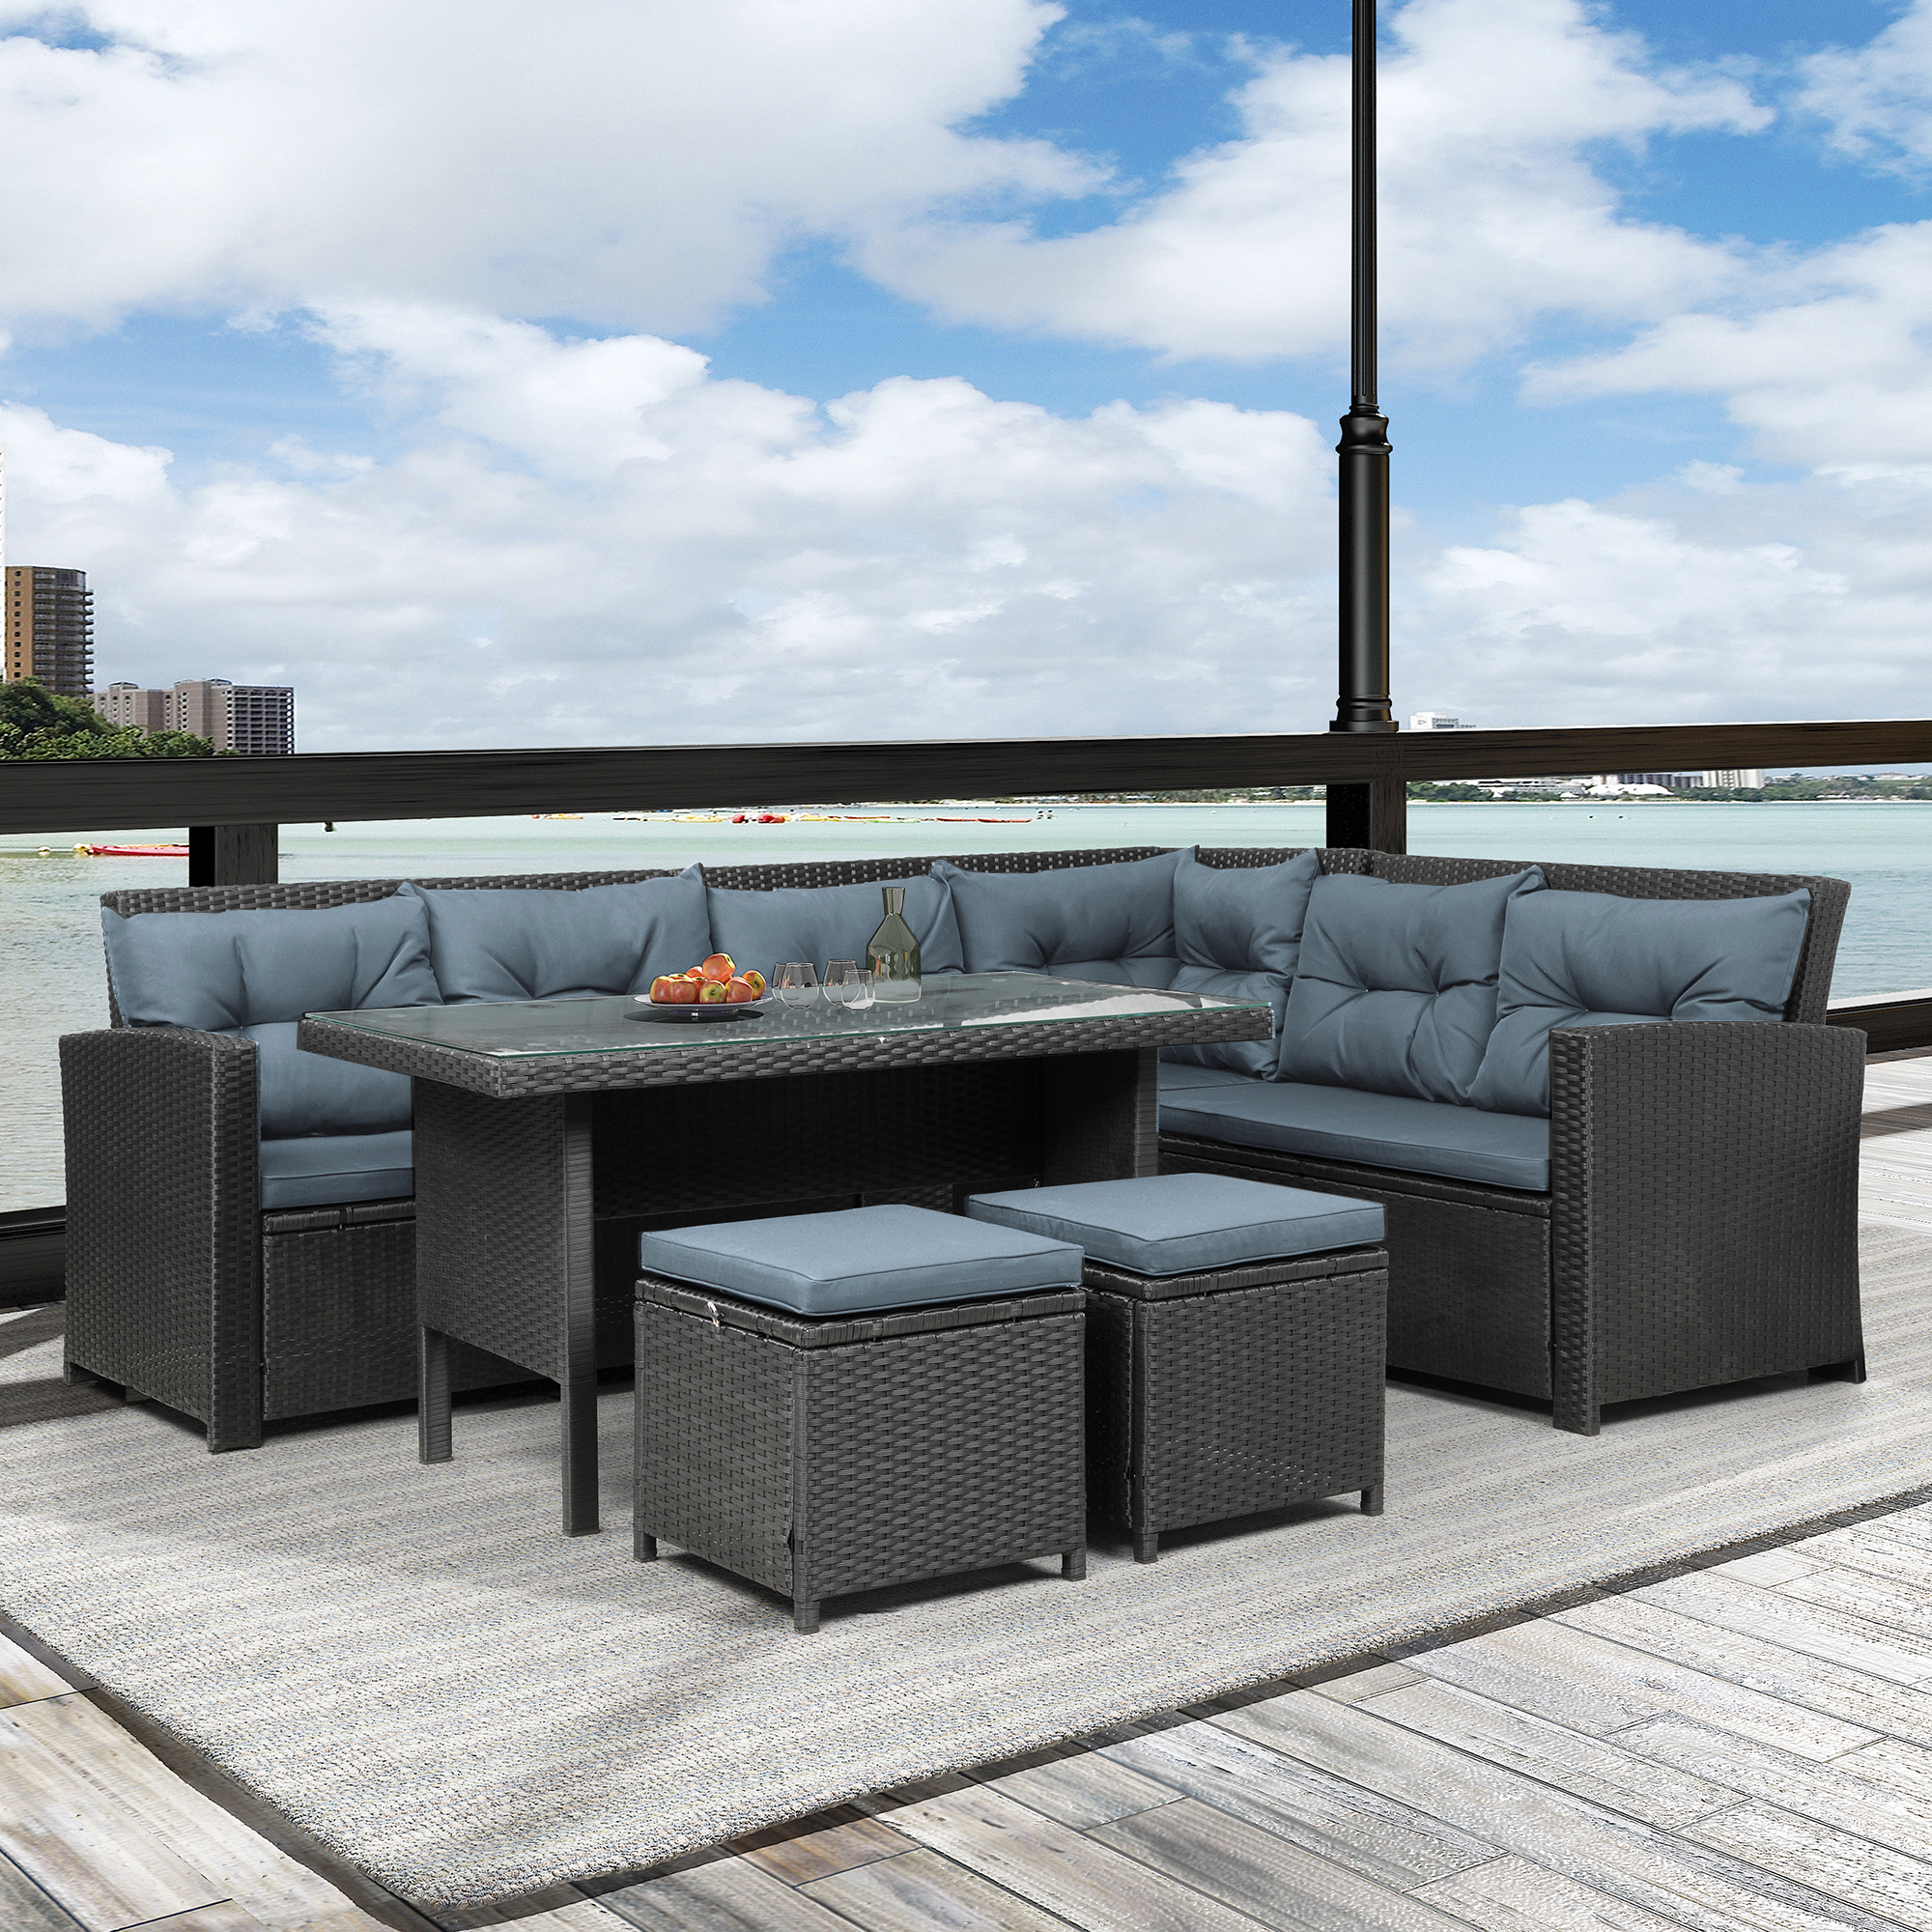 Mondawe 6 PCS Patio Furniture Set Outdoor Sectional Sofa Glass Table Ottomans for Pool Backyard Lawn (Black)-Mondawe